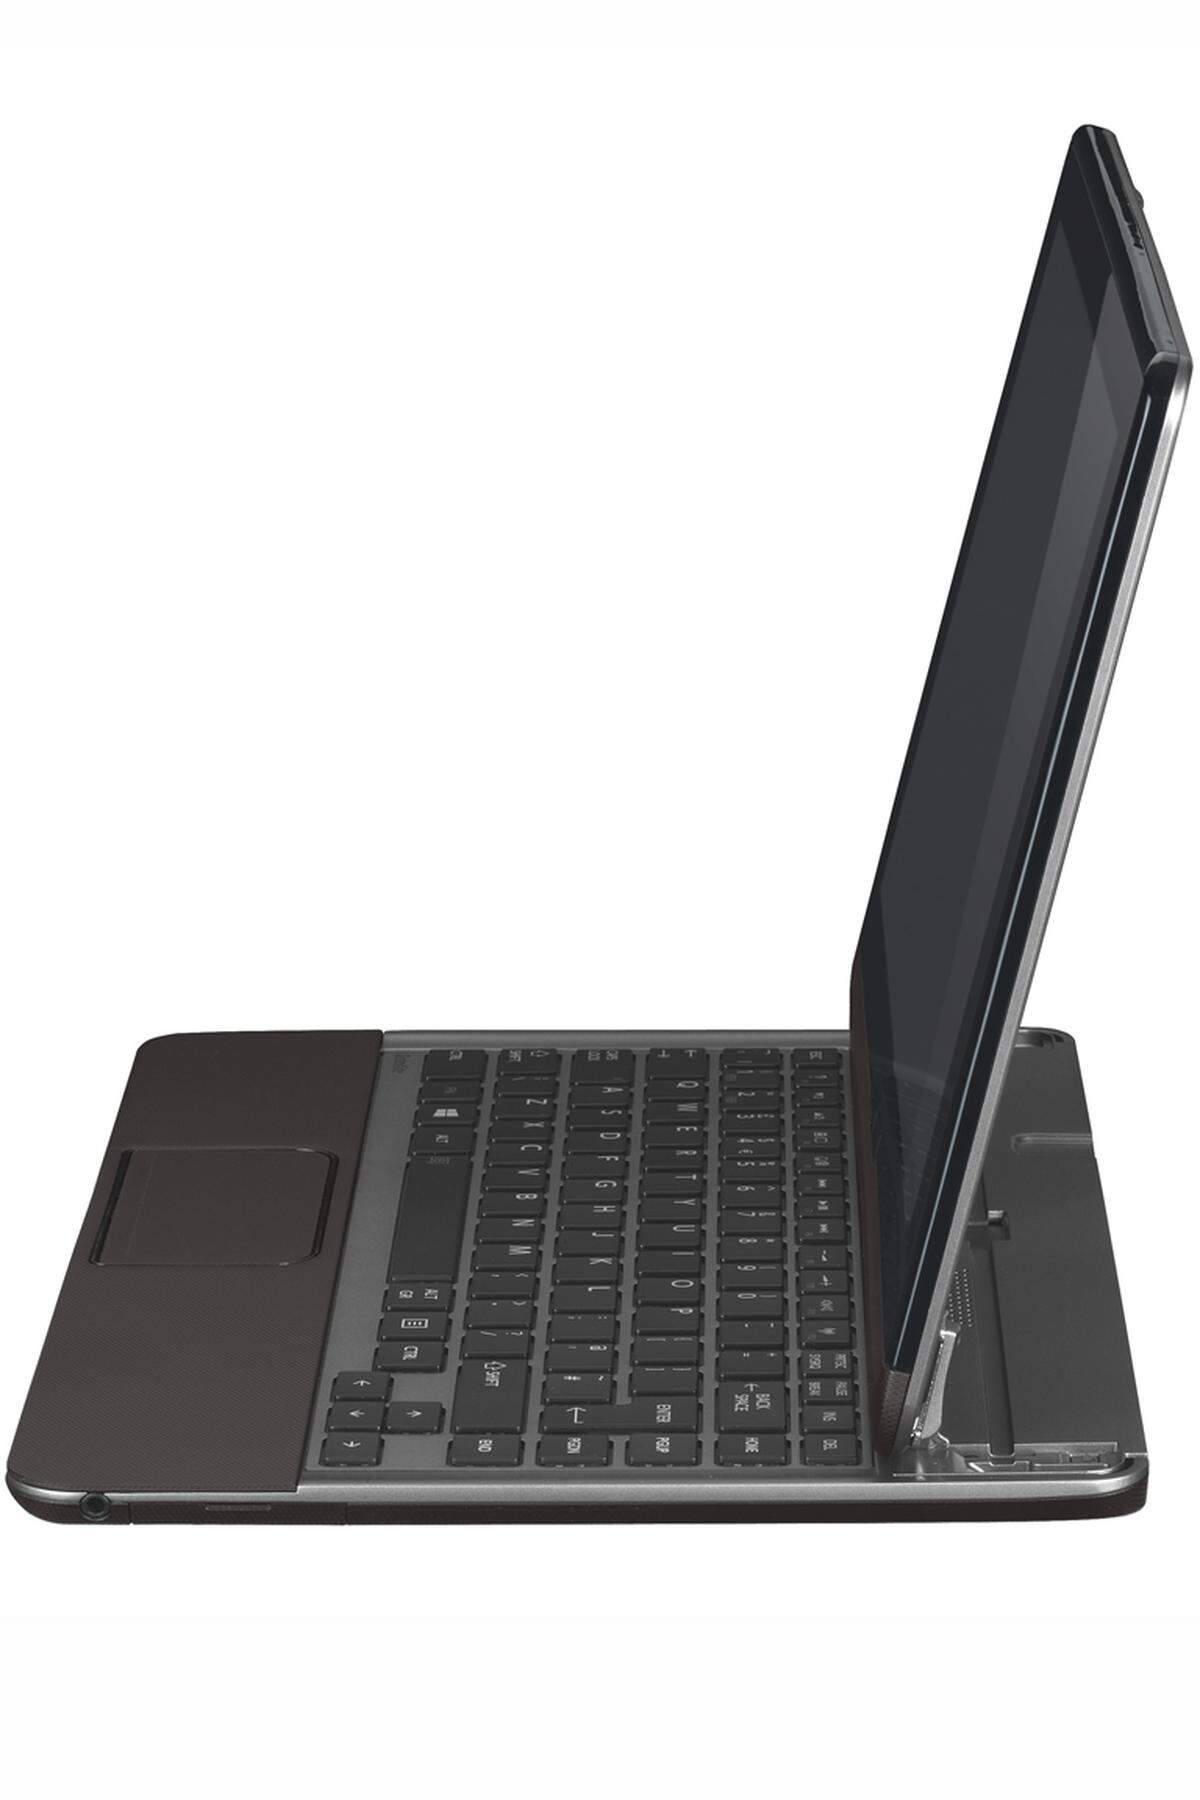 Das Satellite U920t will Tablet und Laptop vereinen und lässt den Touchscreen auf die Tastatur klappen. Dabei wird ein ungewöhnlicher Scharniermechanismus genutzt, der im Laptop-Modus regelrecht offen klafft. Mit 12,5 Zoll und 1366 x 768 Bildpunkten ist das Satellite U920t aber mehr als Laptop denn als Tablet positioniert. Auf den Markt kommen soll es voraussichtlich im vierten Quartal, zu Preisen äußerte sich der Hersteller nicht.